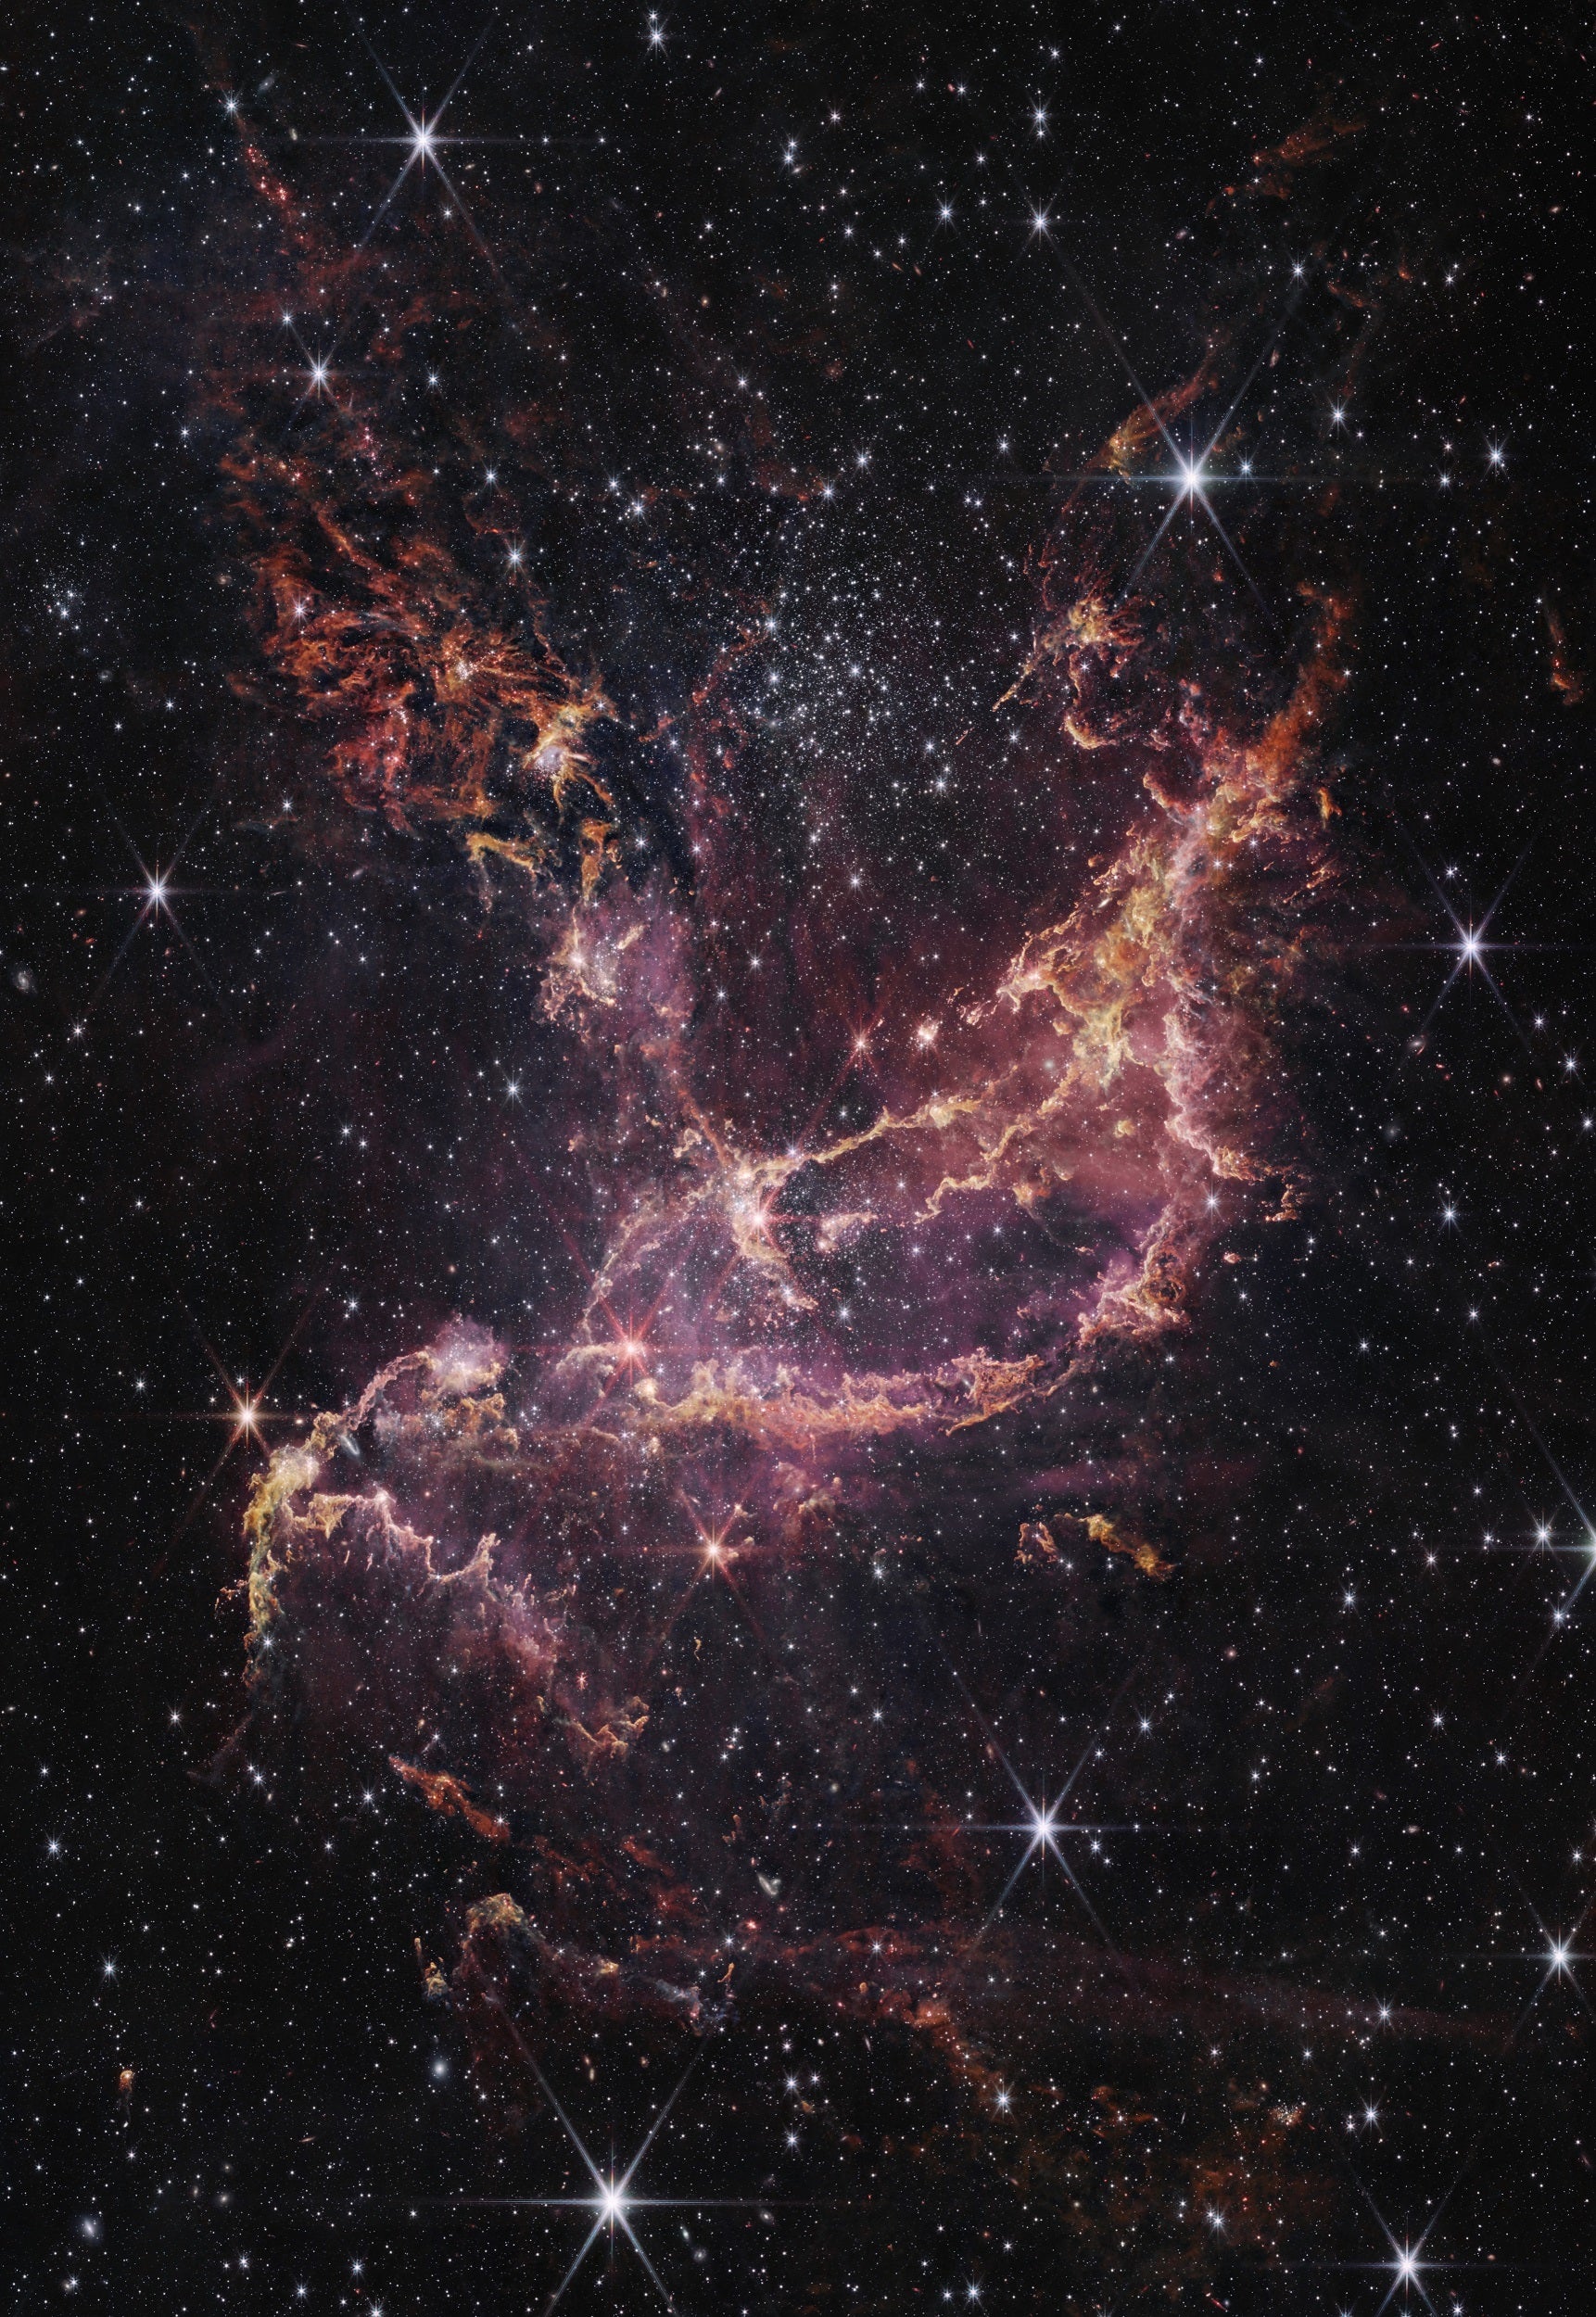 NGC 346, mostrado aquí en esta imagen de la NIRCam (cámara de infrarrojo cercano) del telescopio espacial James Webb de la NASA, es un dinámico cúmulo de estrellas que se encuentra dentro de una nebulosa a 200.000 años luz de distancia